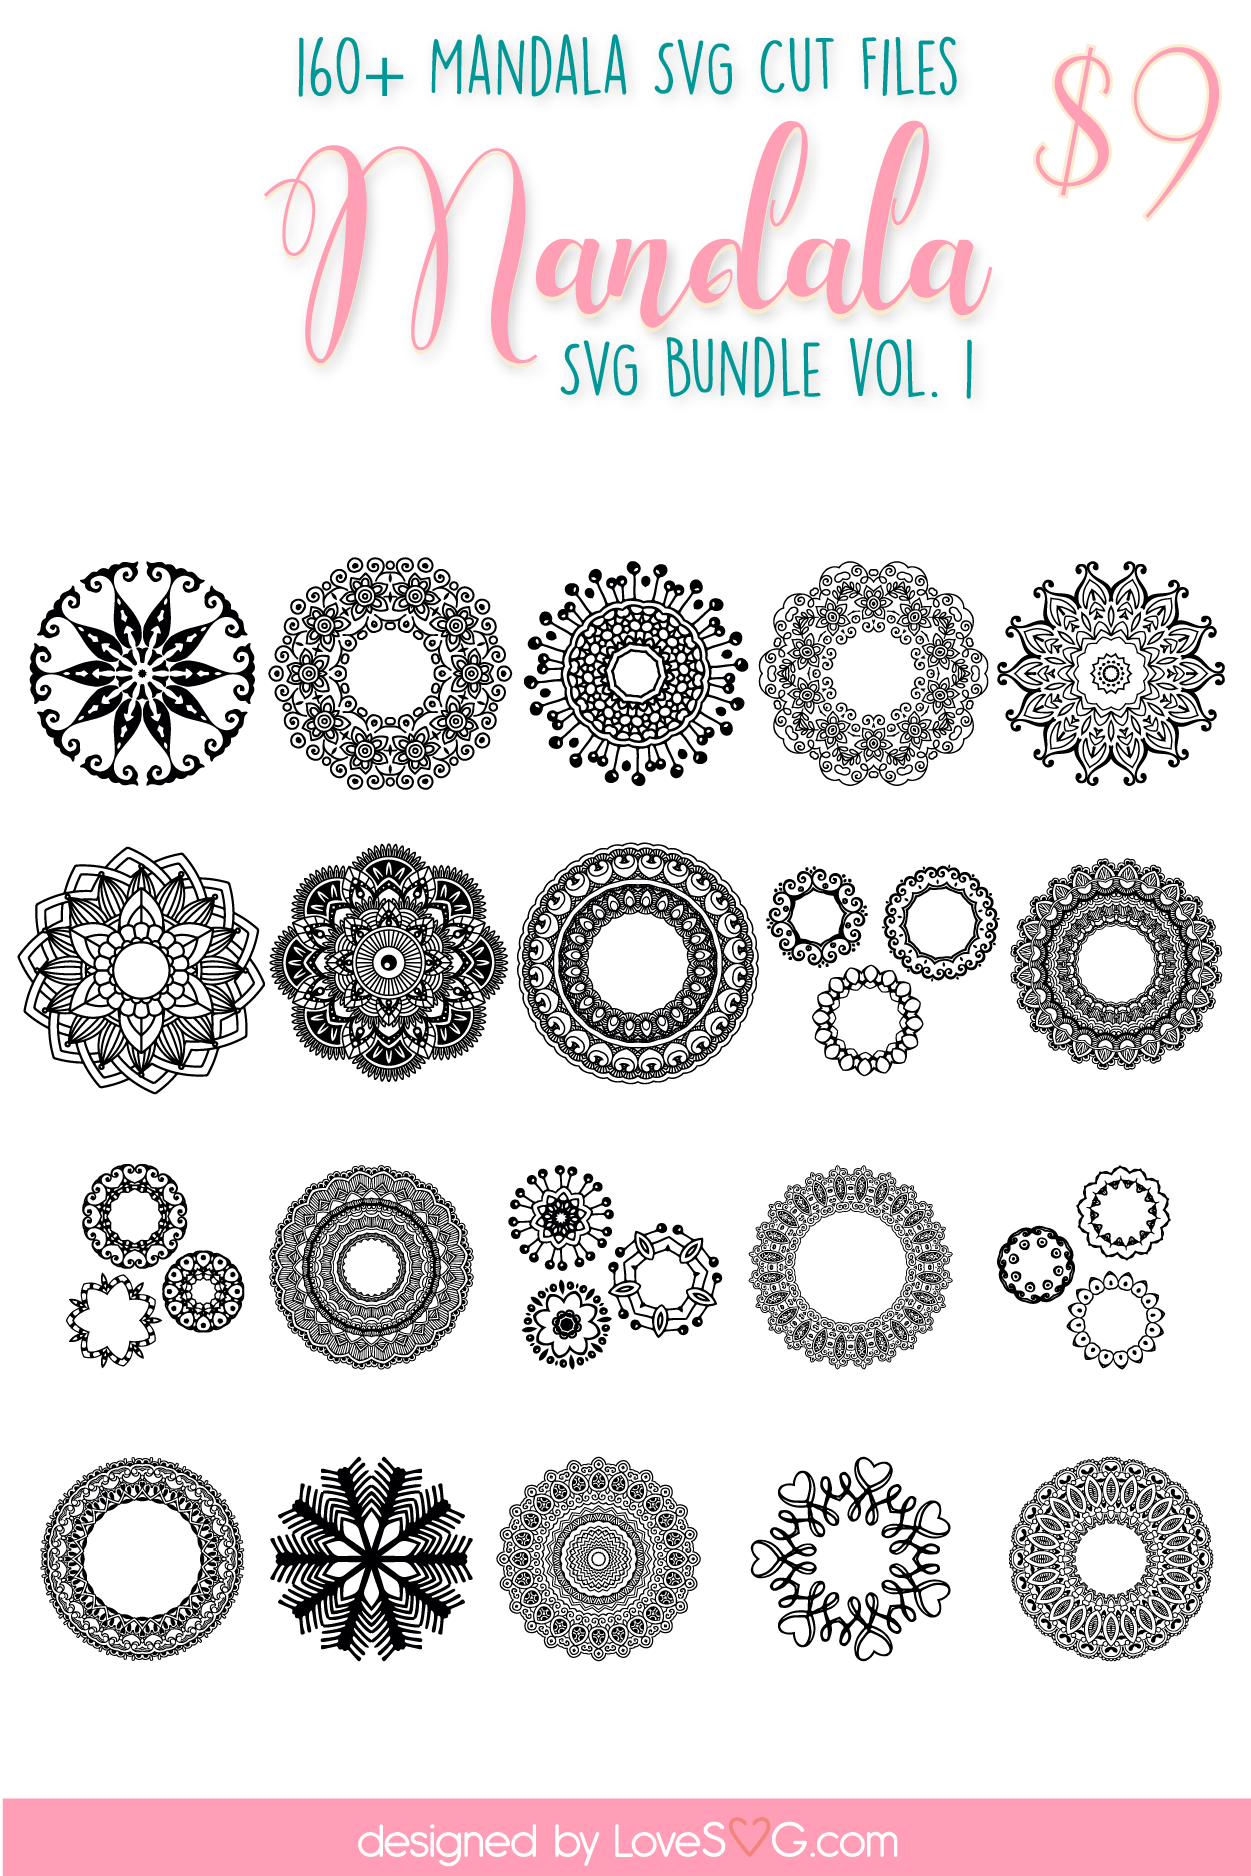 Download The Mandala SVG Bundle - Lovesvg.com